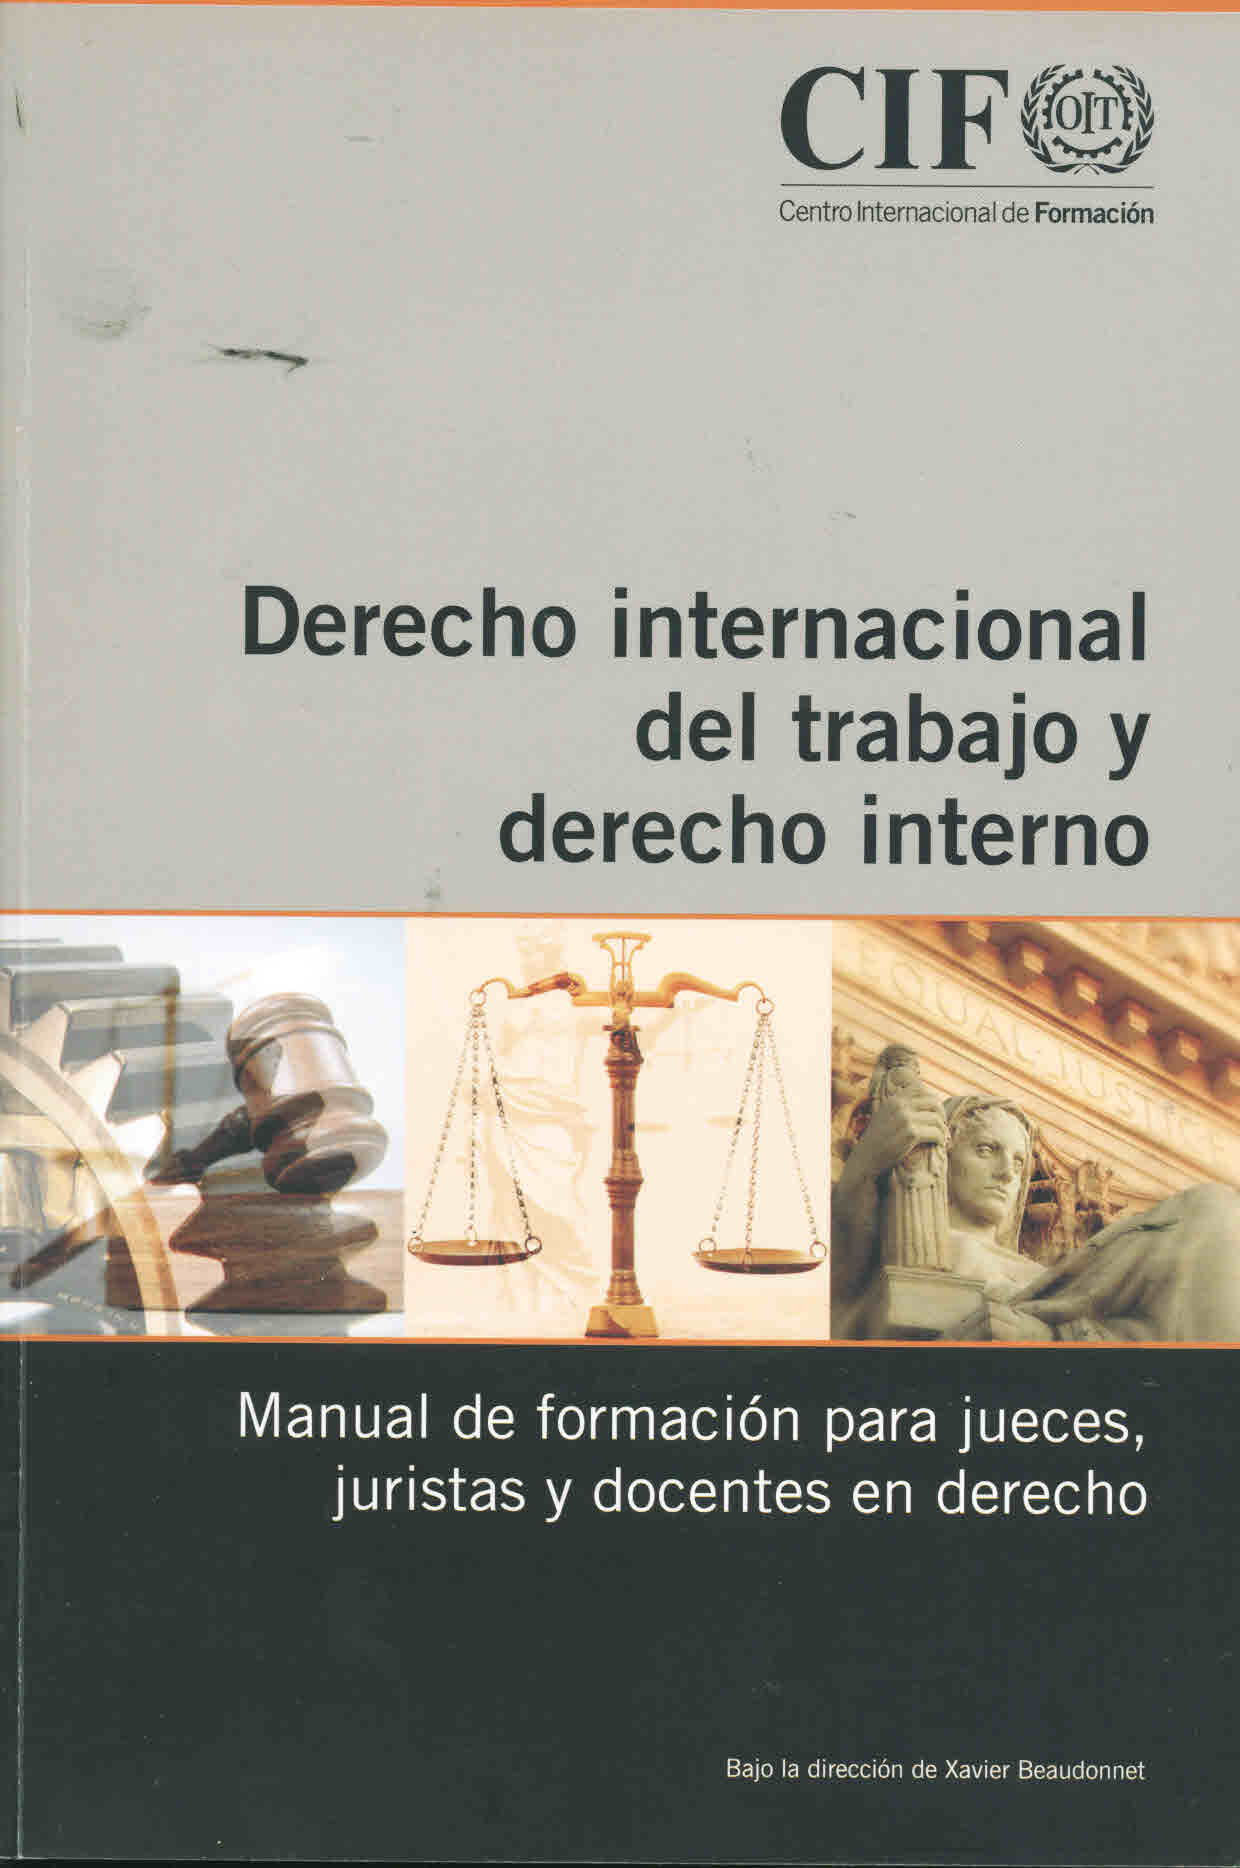 Derecho internacional del trabajo y derecho interno. Manual de formación para jueces, juristas y docentes en derecho